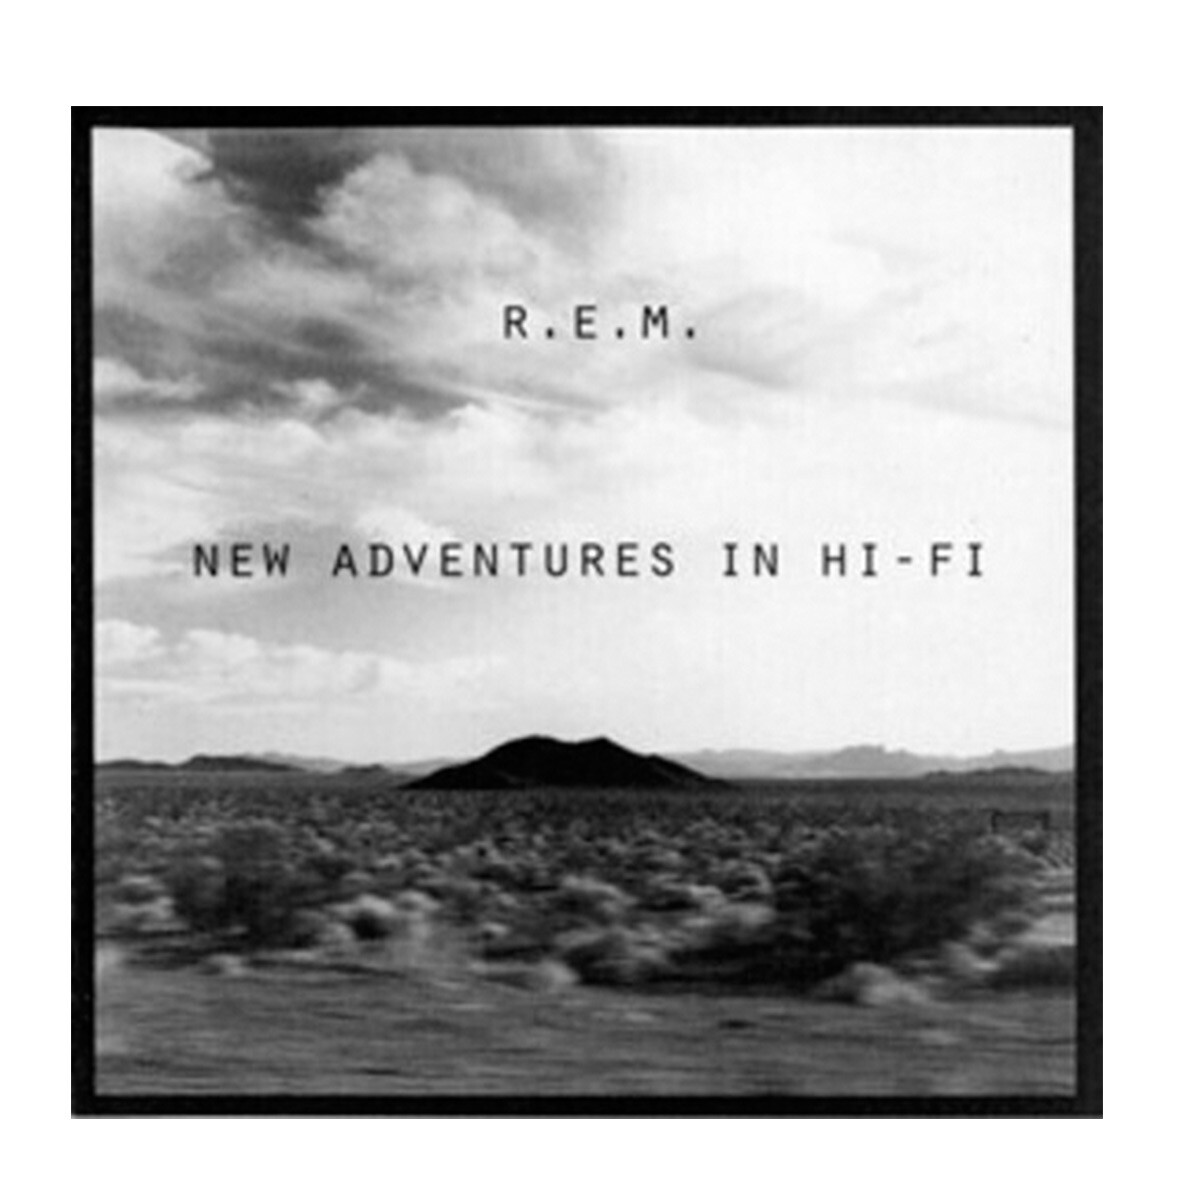 R.e.m. - New Adventures In Hi-fi (25th Anniversary Edition) - Cd 